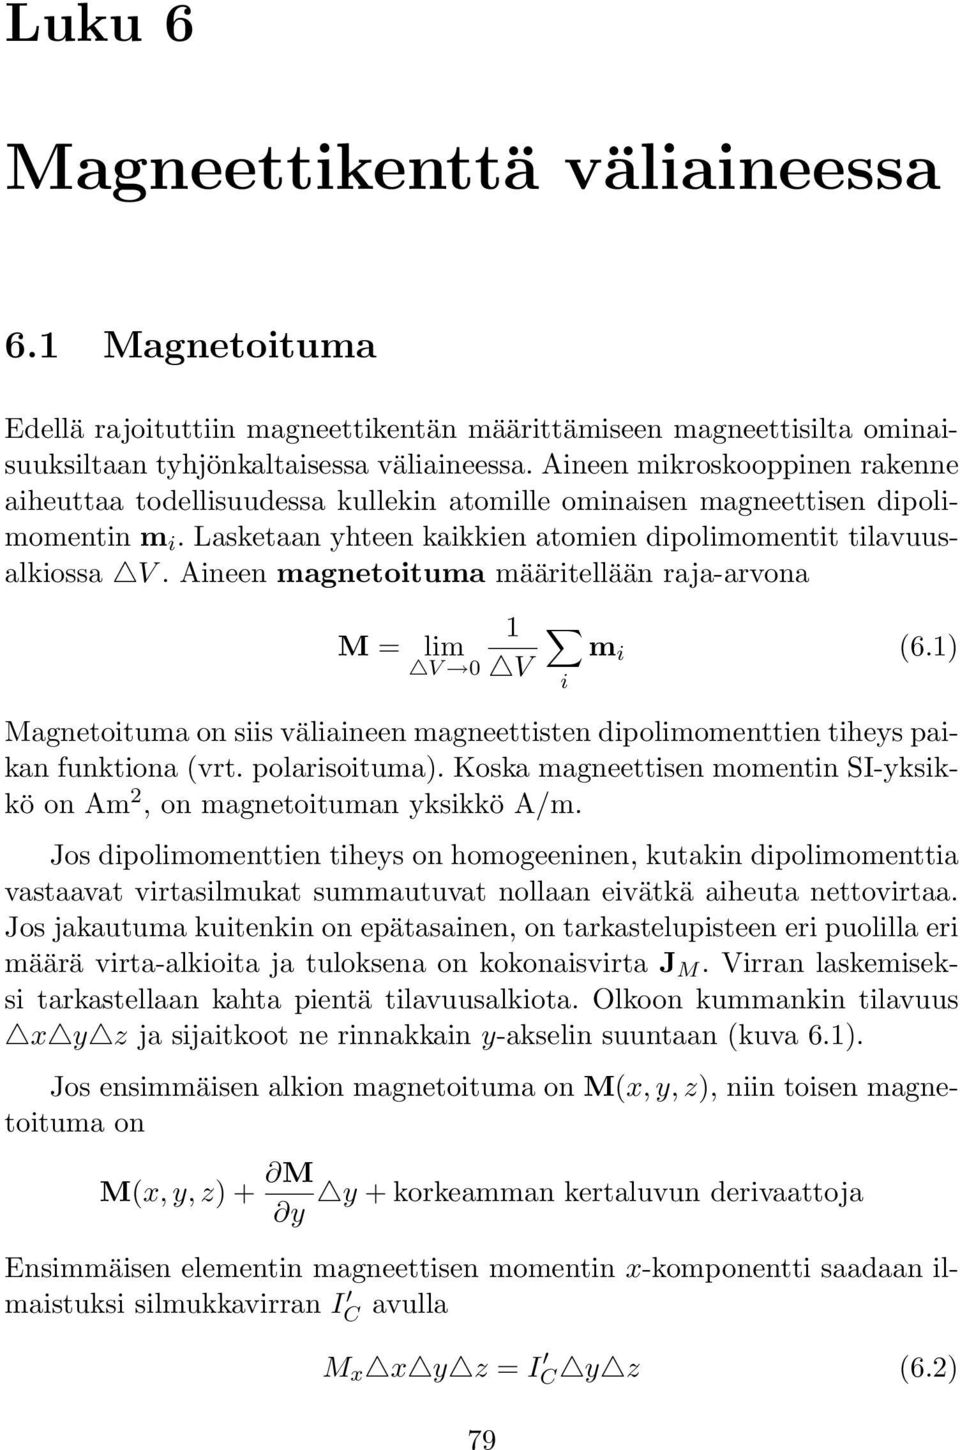 Aineen magnetoituma määritellään raja-arvona M = lim V 1 V m i (6.1) i Magnetoituma on siis väliaineen magneettisten dipolimomenttien tiheys paikan funktiona (vrt. polarisoituma).